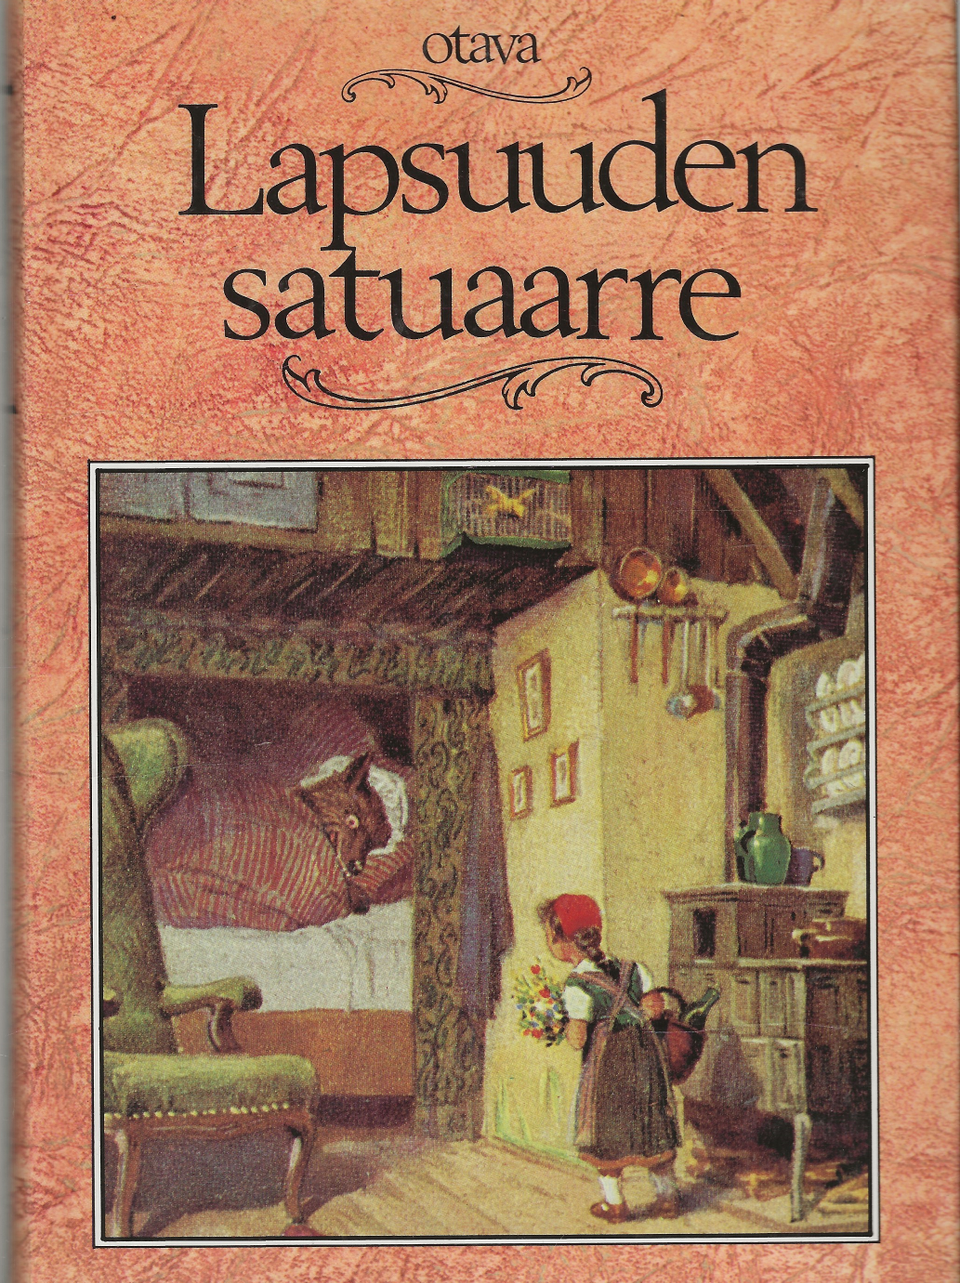 Lapsuuden satuaarre. Otava 1987.